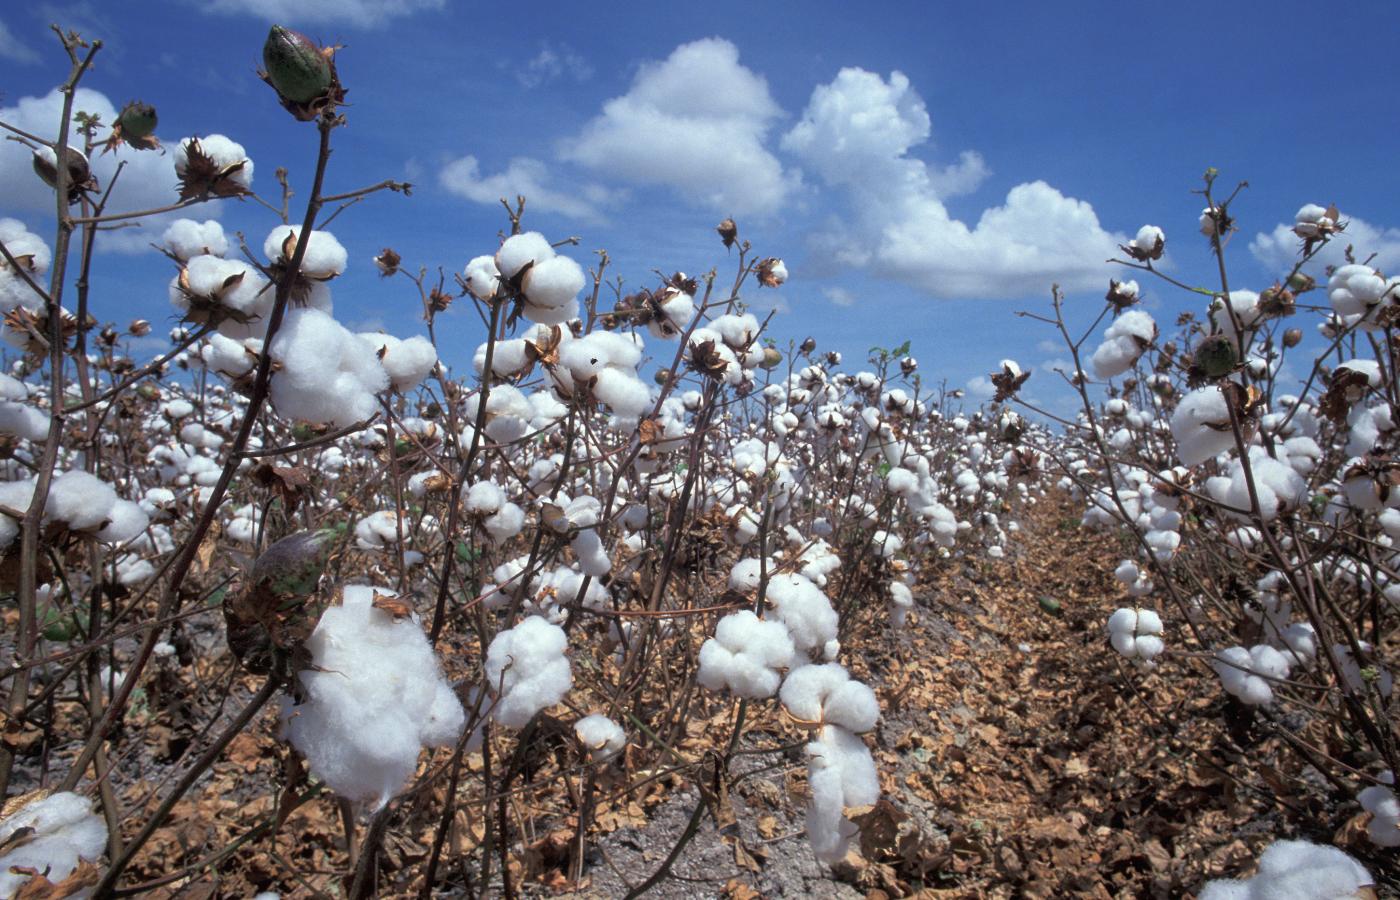 Zmodyfikowane odmiany bawełny Bt uprawia w Indiach 7 mln rolników. Generalnie są z tych odmian zadowoleni.